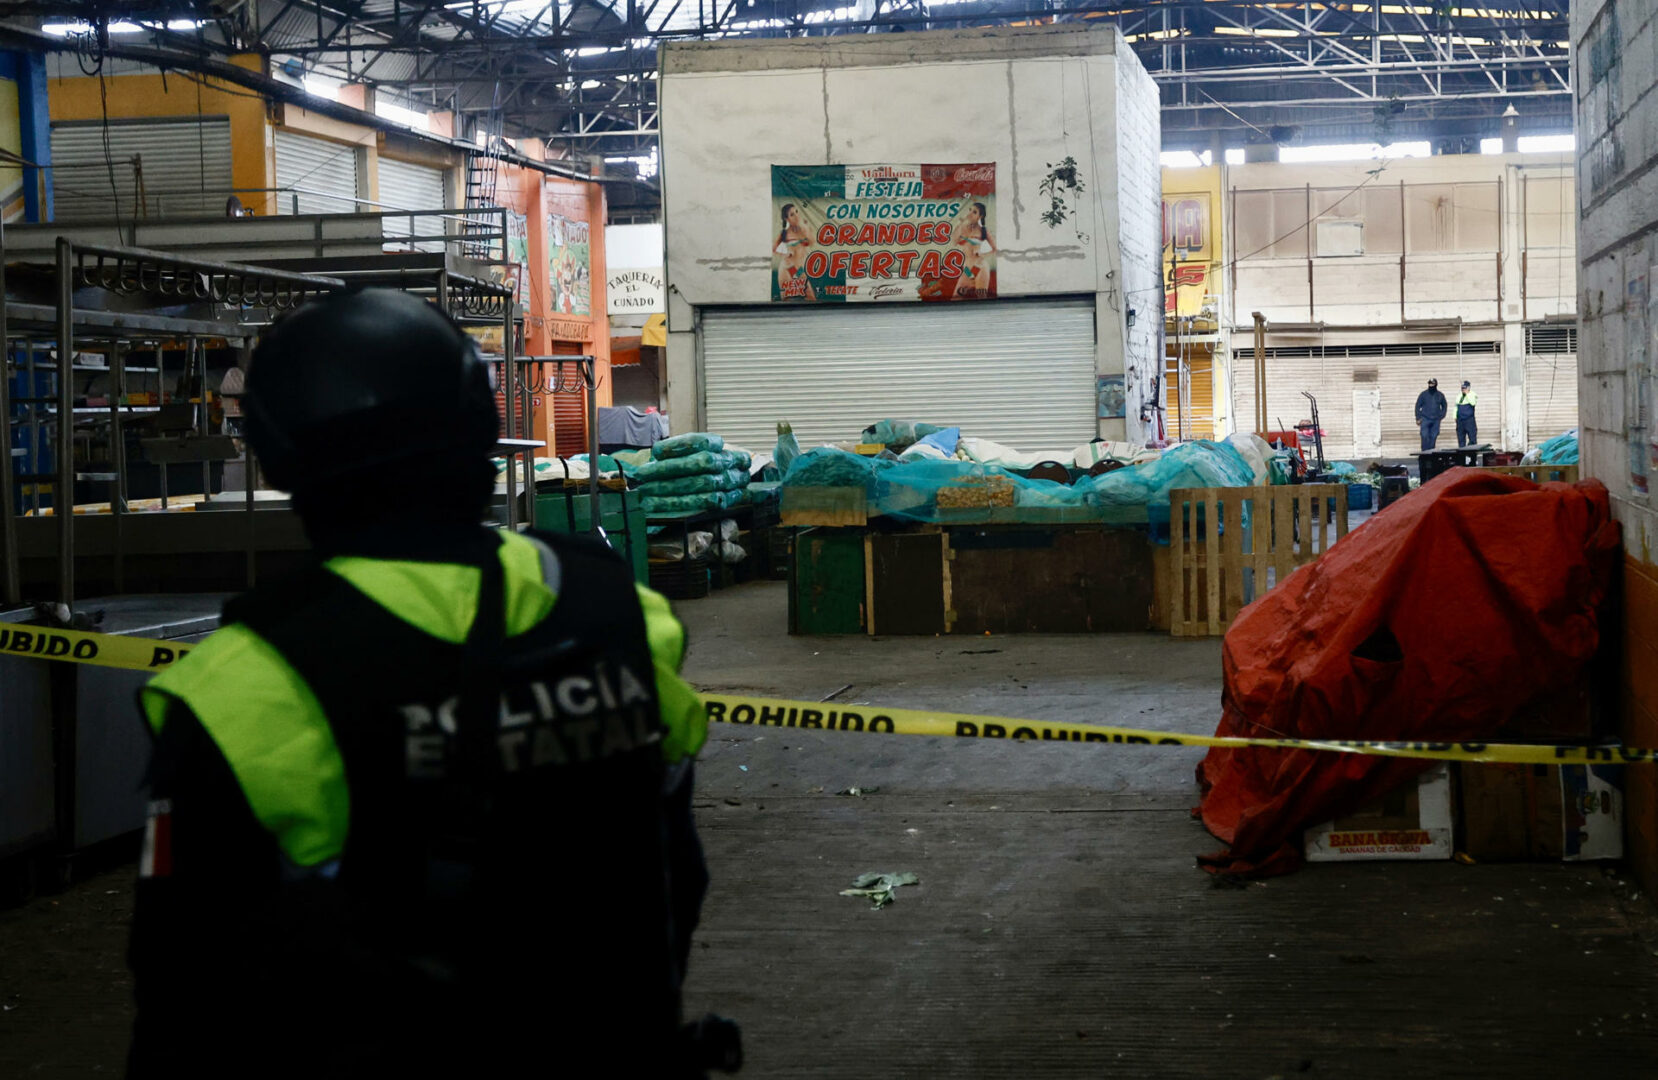 incendio y 9 muertos en mercado de abastos de mexico debido a disputa entre comerciantes